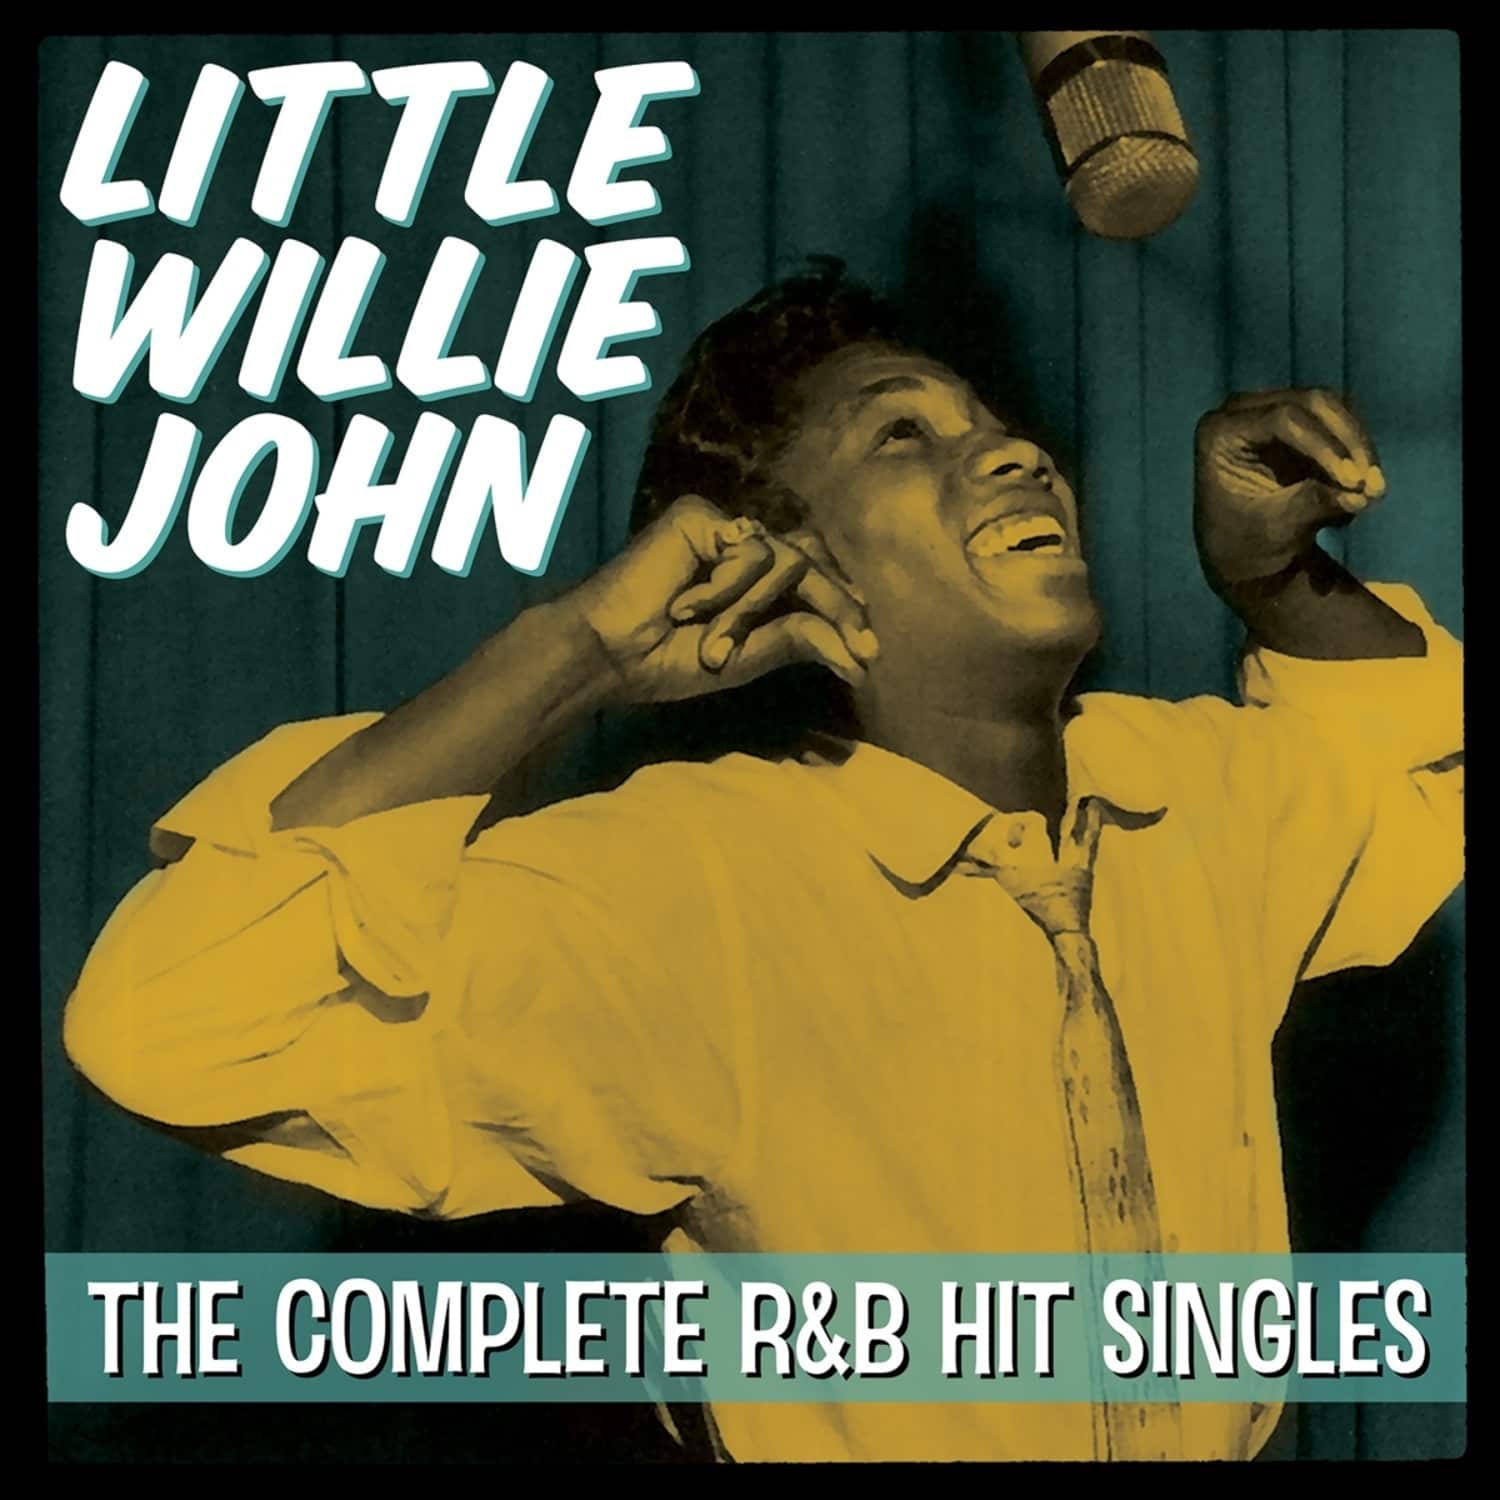  Little Willie John - COMPLETE R&B HIT SINGLES 